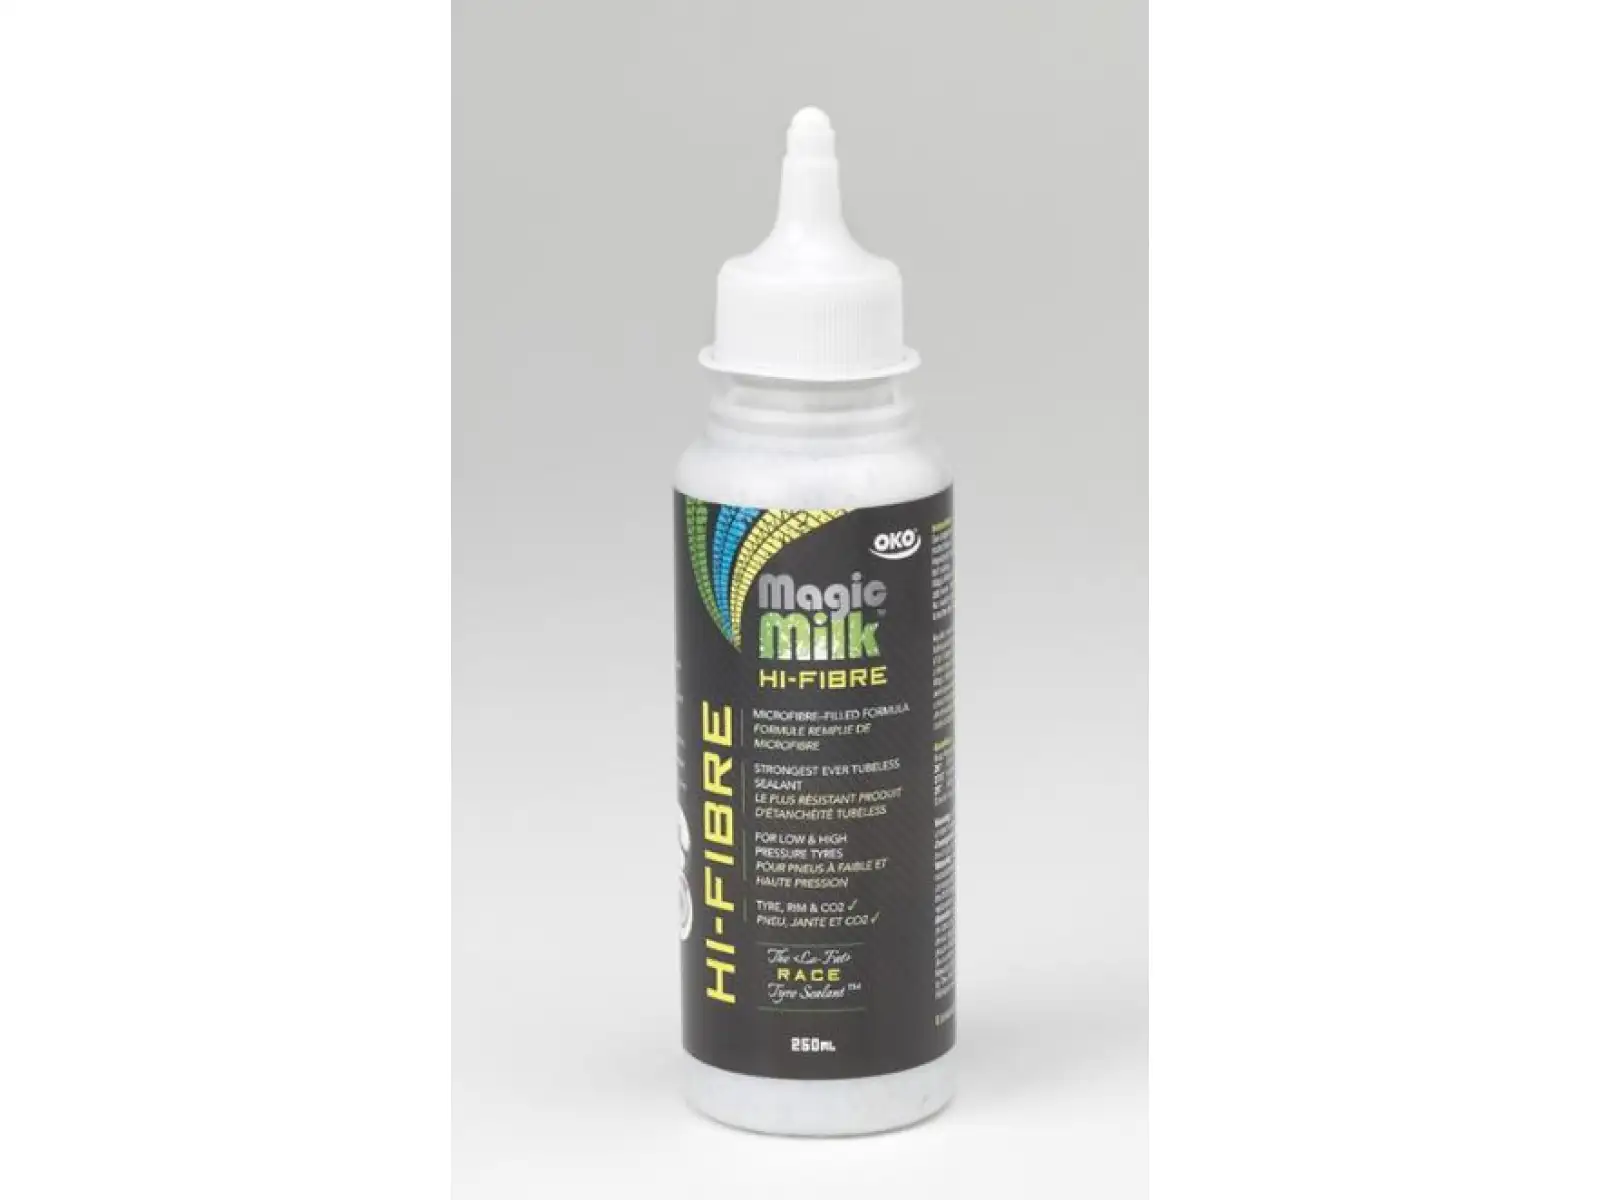 OKO Magic Milk Hi-Fibre Sealant 250 ml